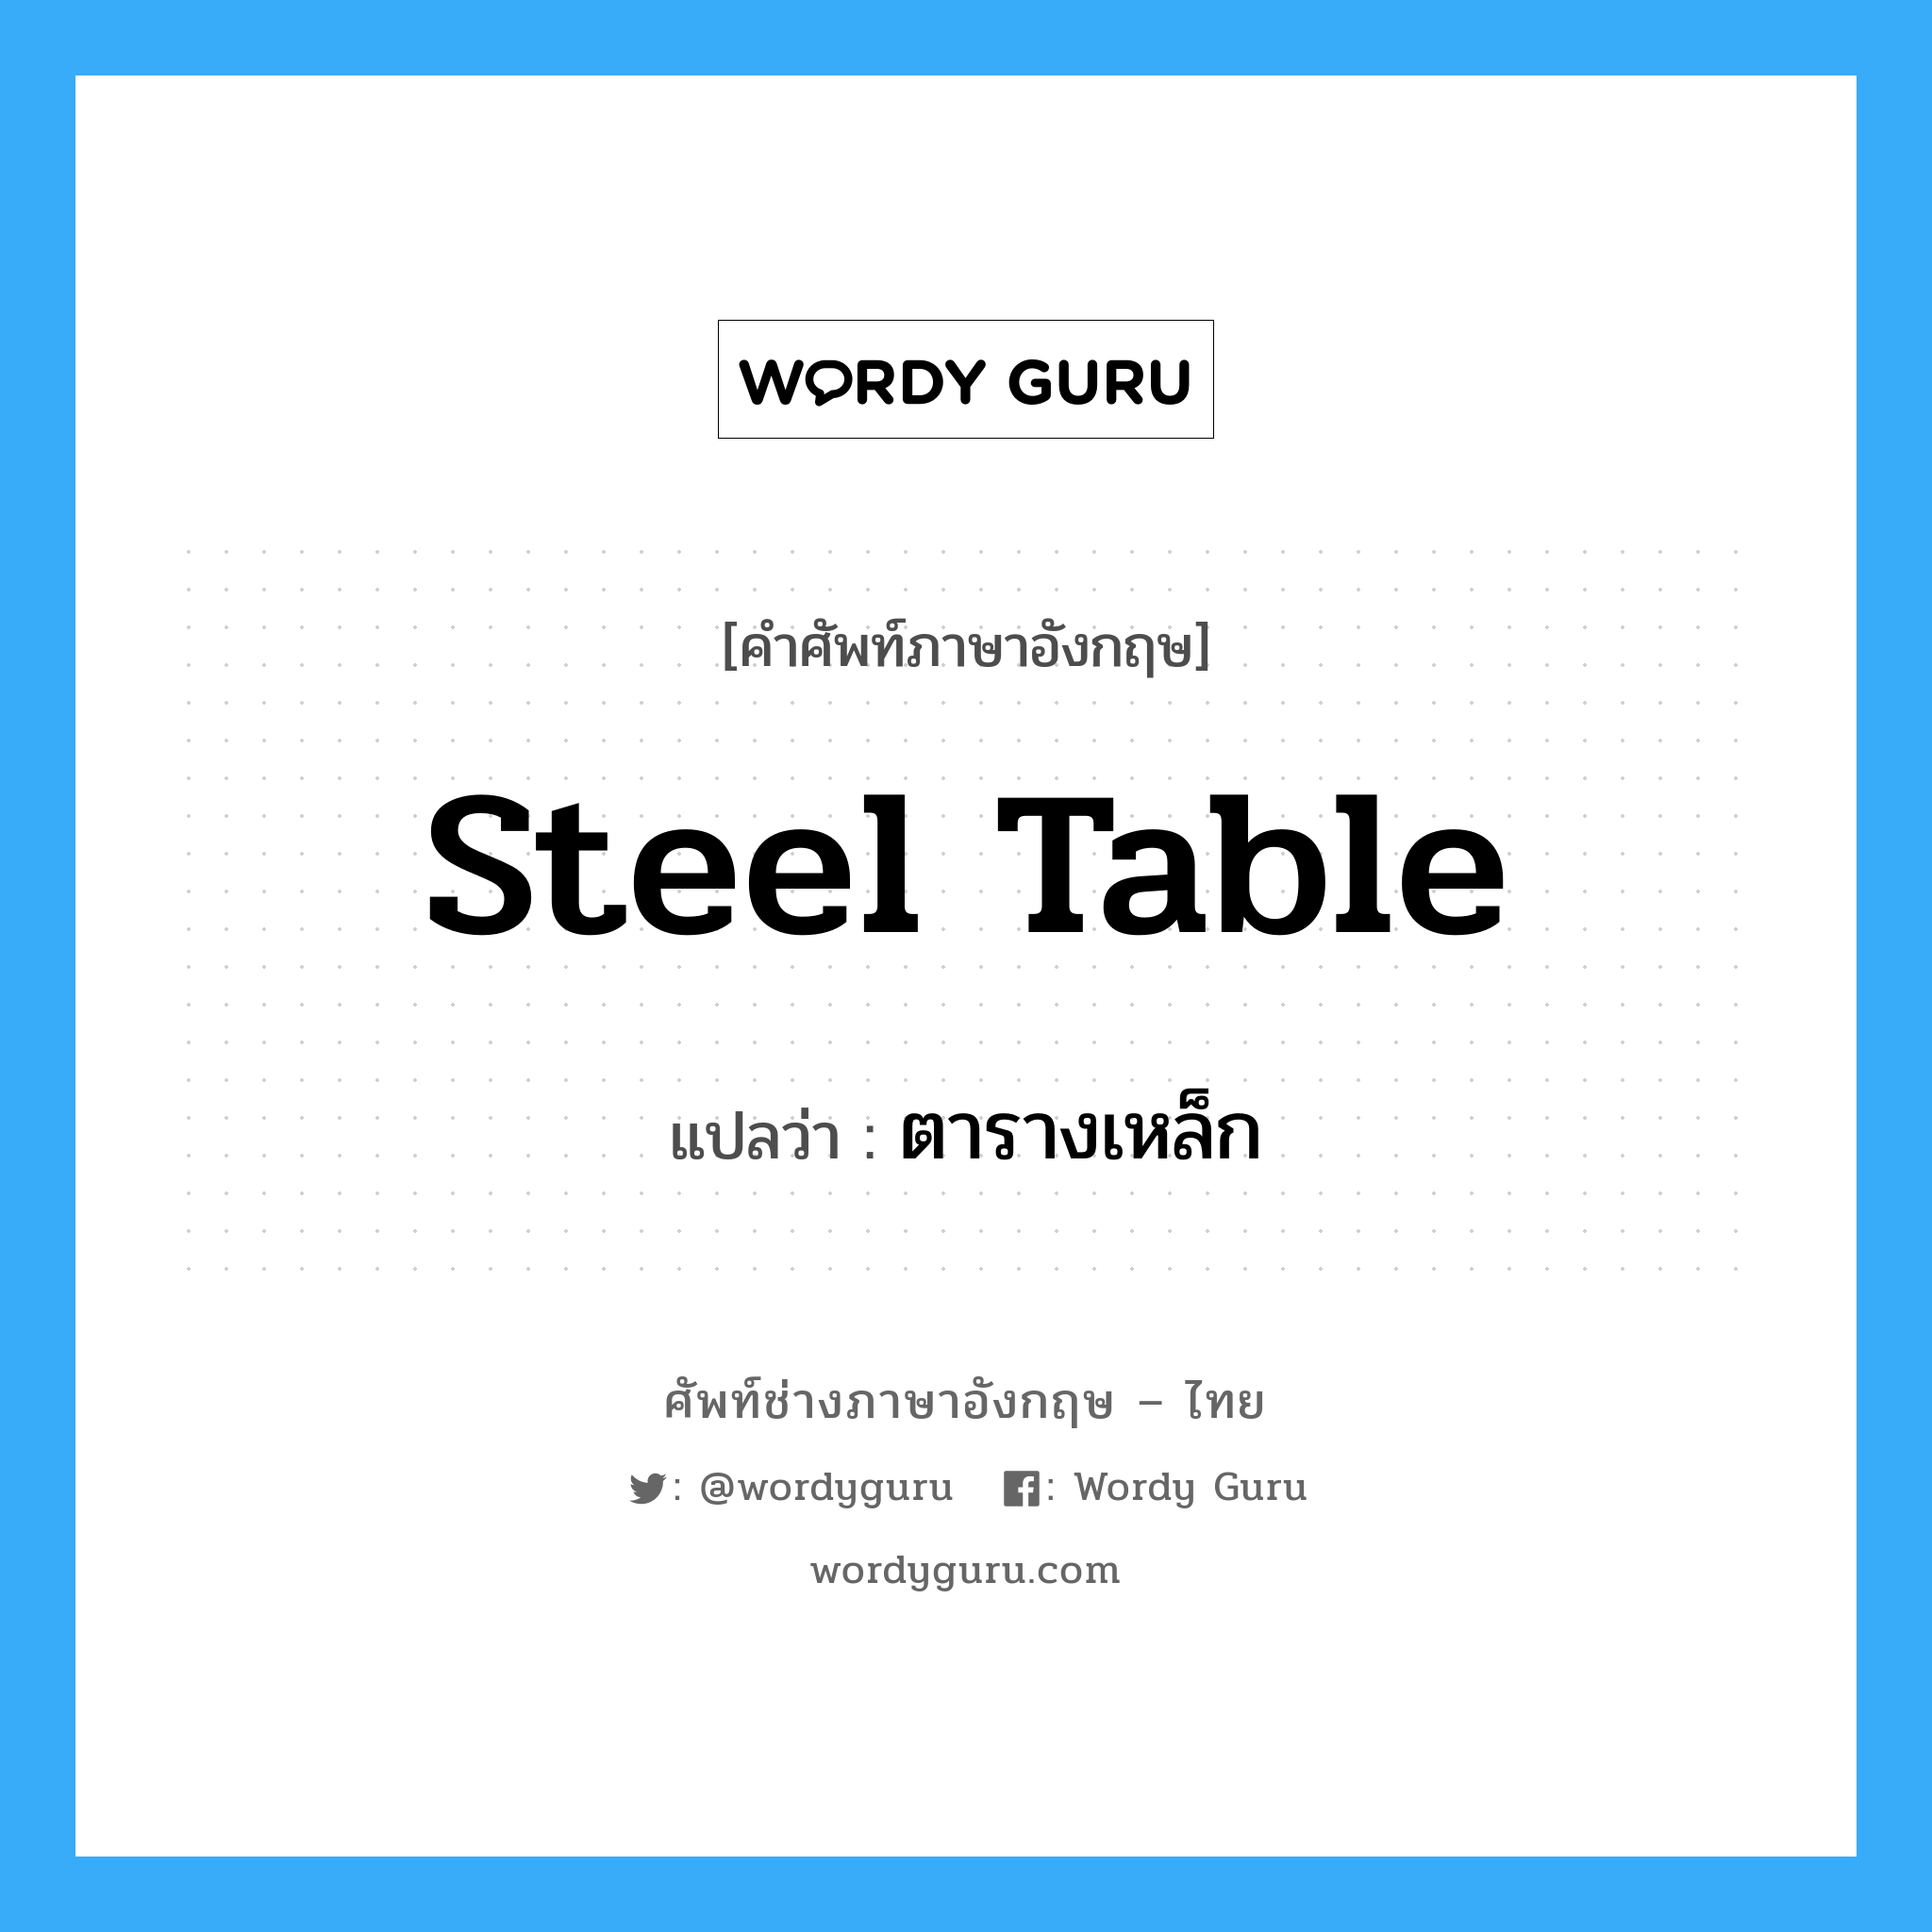 steel table แปลว่า?, คำศัพท์ช่างภาษาอังกฤษ - ไทย steel table คำศัพท์ภาษาอังกฤษ steel table แปลว่า ตารางเหล็ก